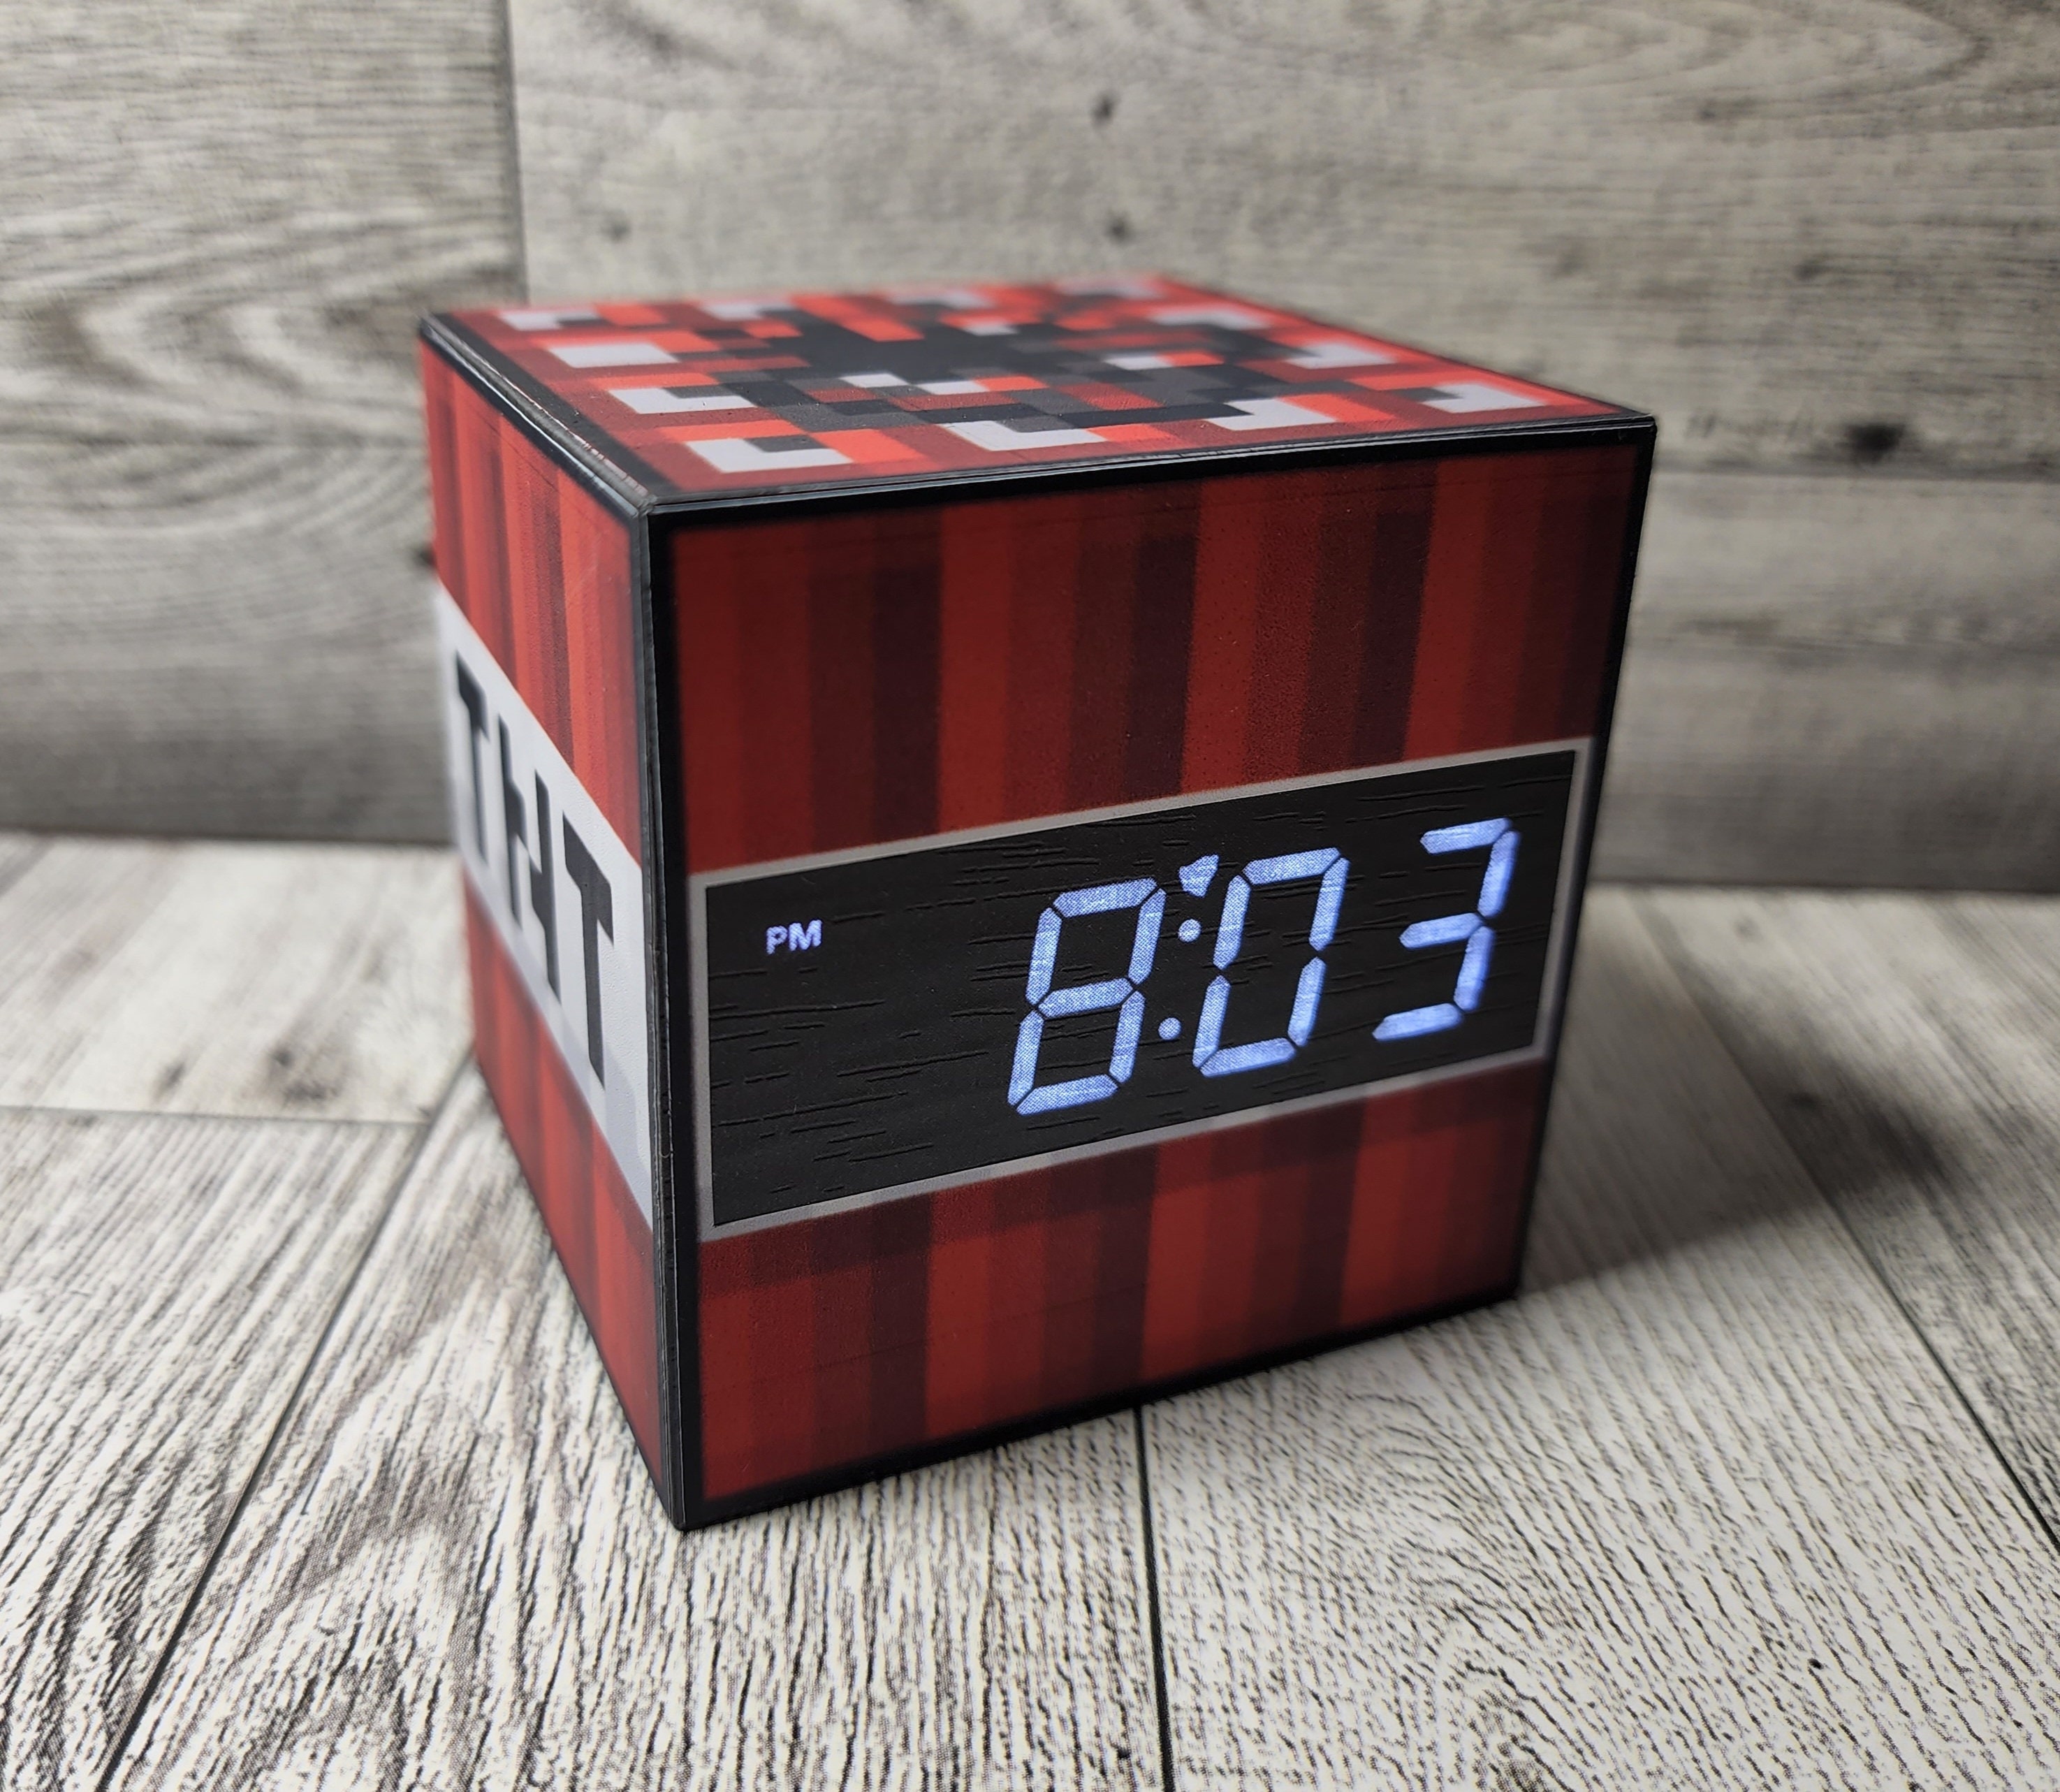 Minecraft Reveil Horloge Alarme